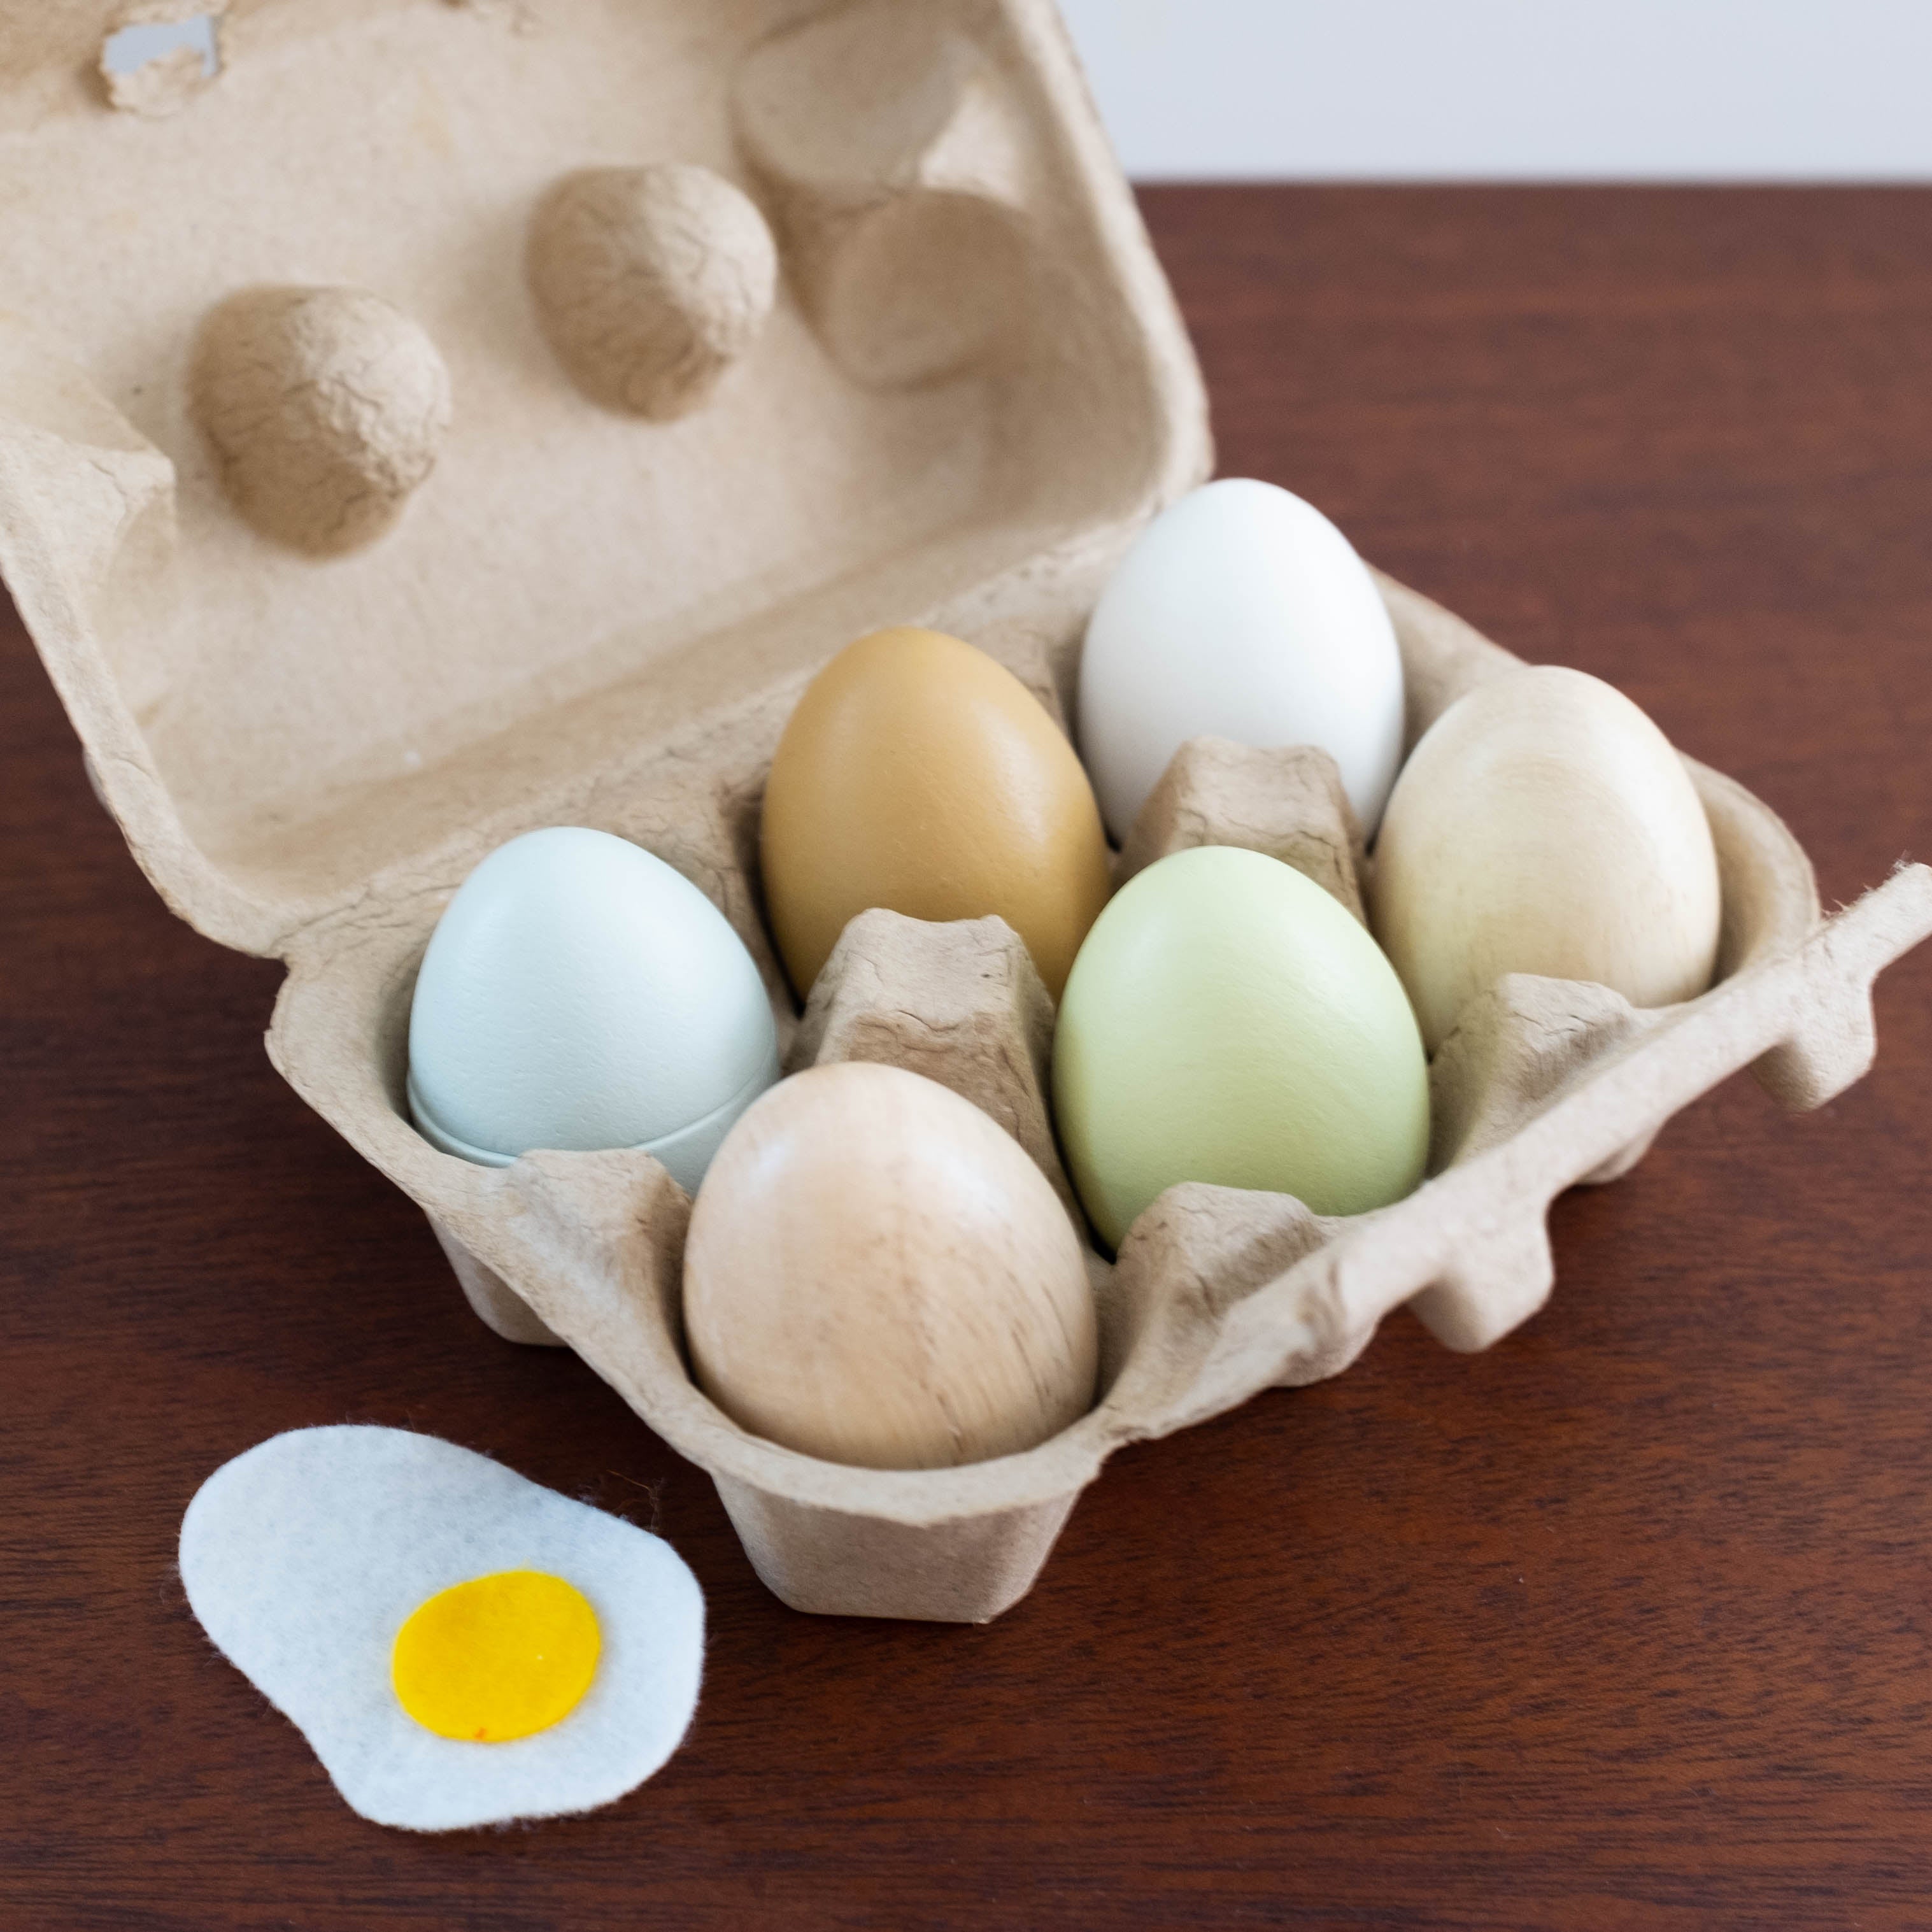 Wooden Eggs in a Carton